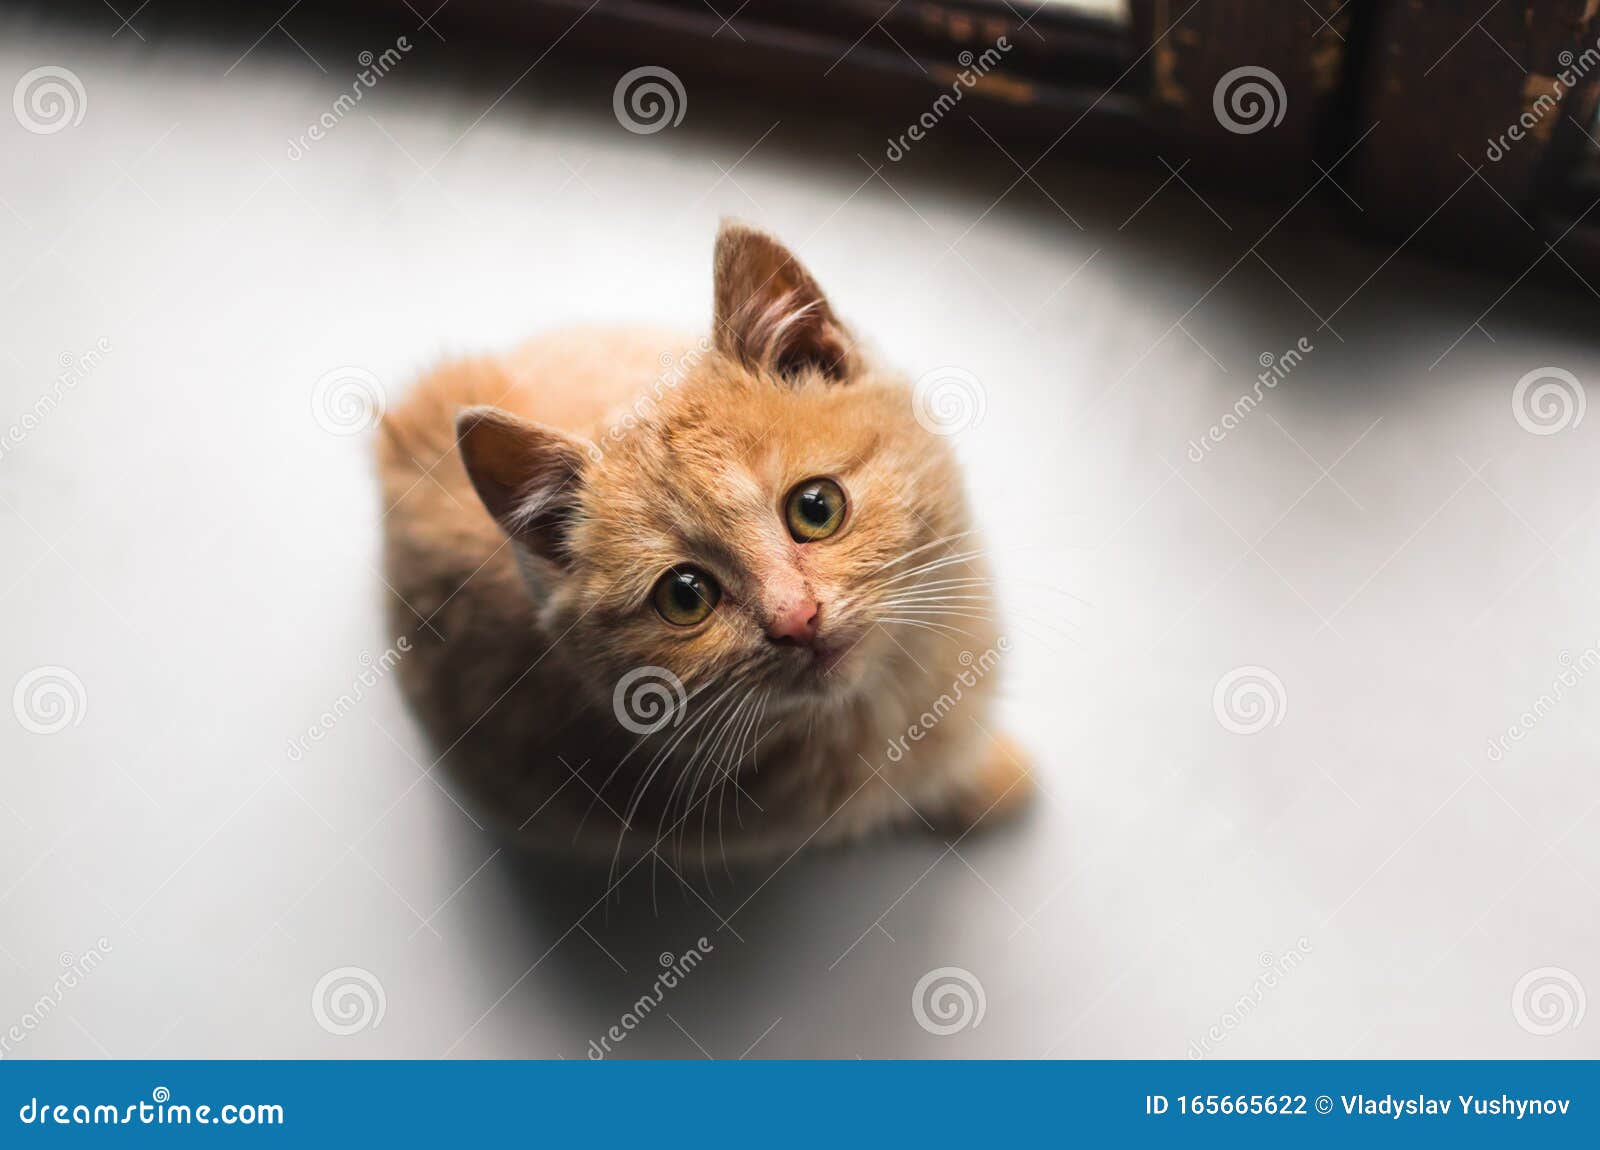 Schandalig ik ben gelukkig Wonen Sad Ginger Fluffy Stray Kitten Zit Op Een Wit Raam En Kijkt Op Stock Foto -  Image of vuil, gezicht: 165665622